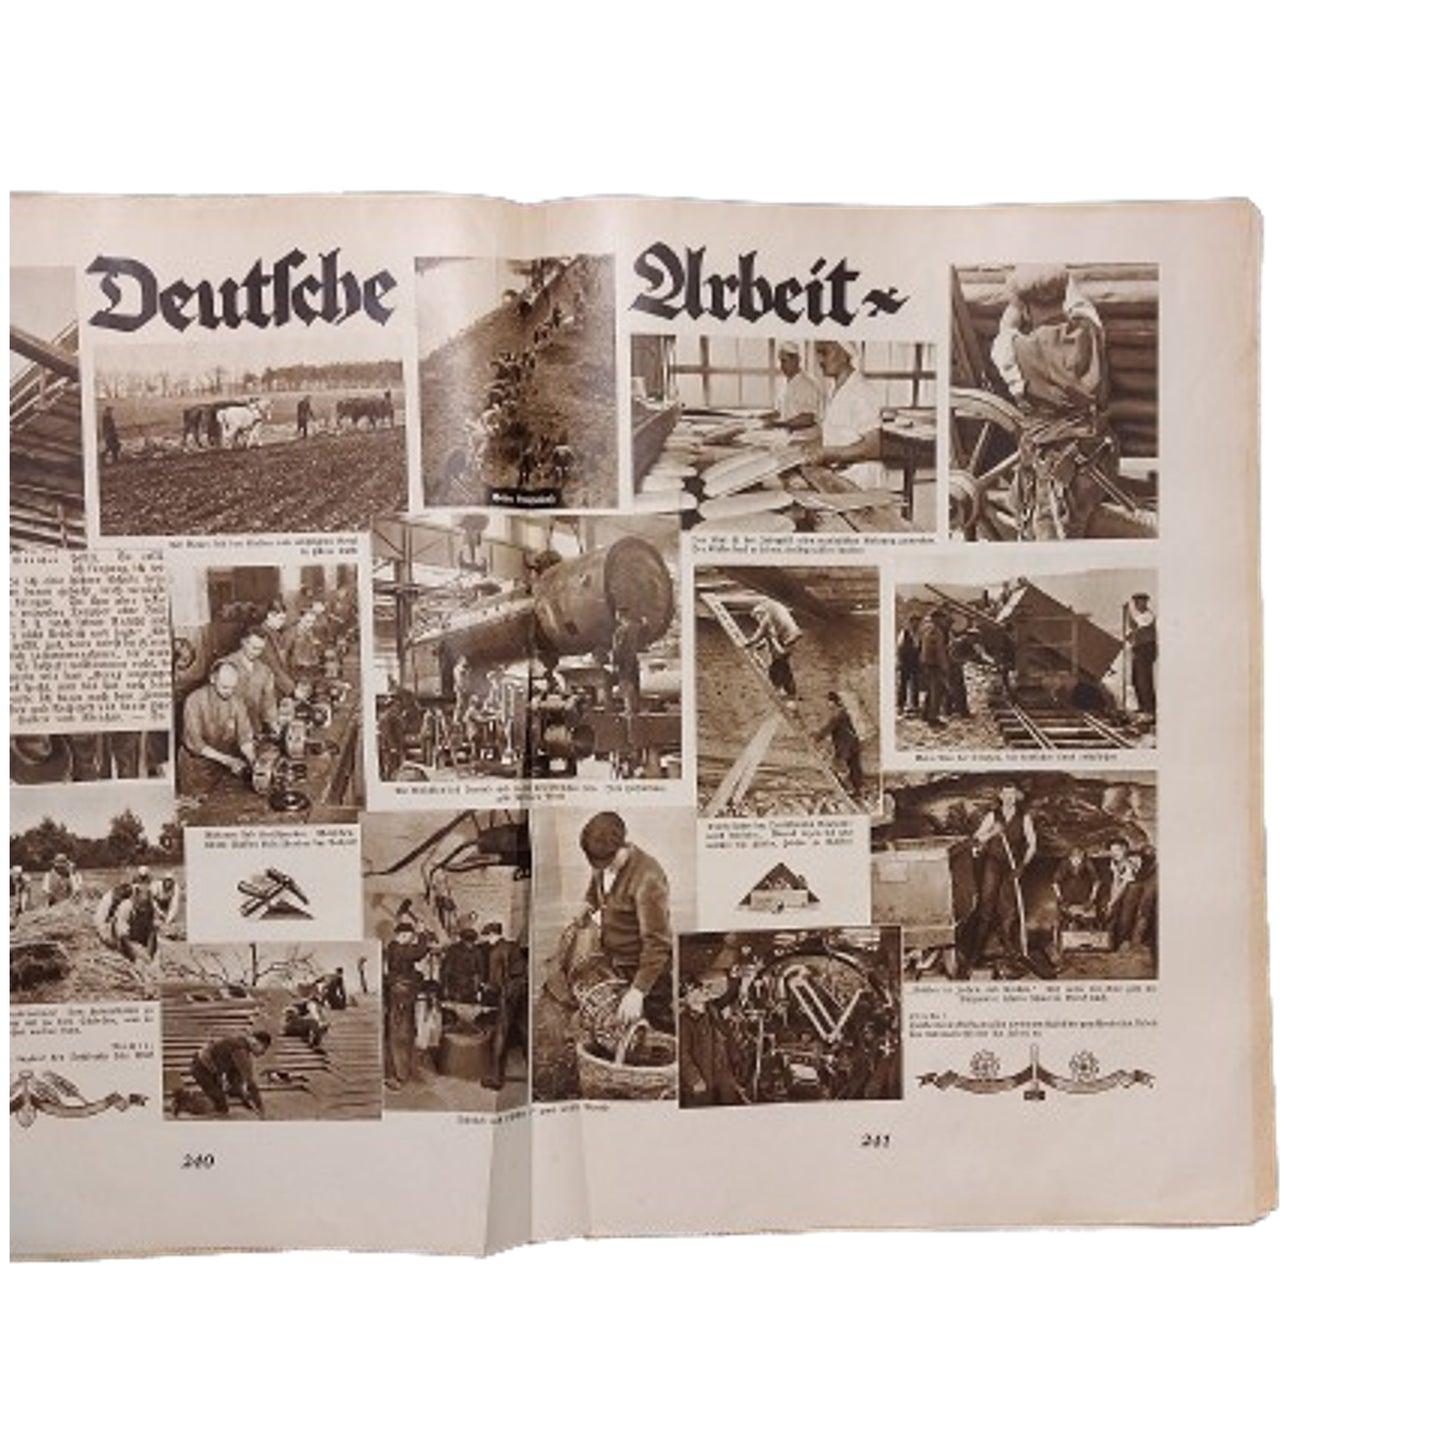 WW2 German Hilf Mit Magazine Issue #8 1934